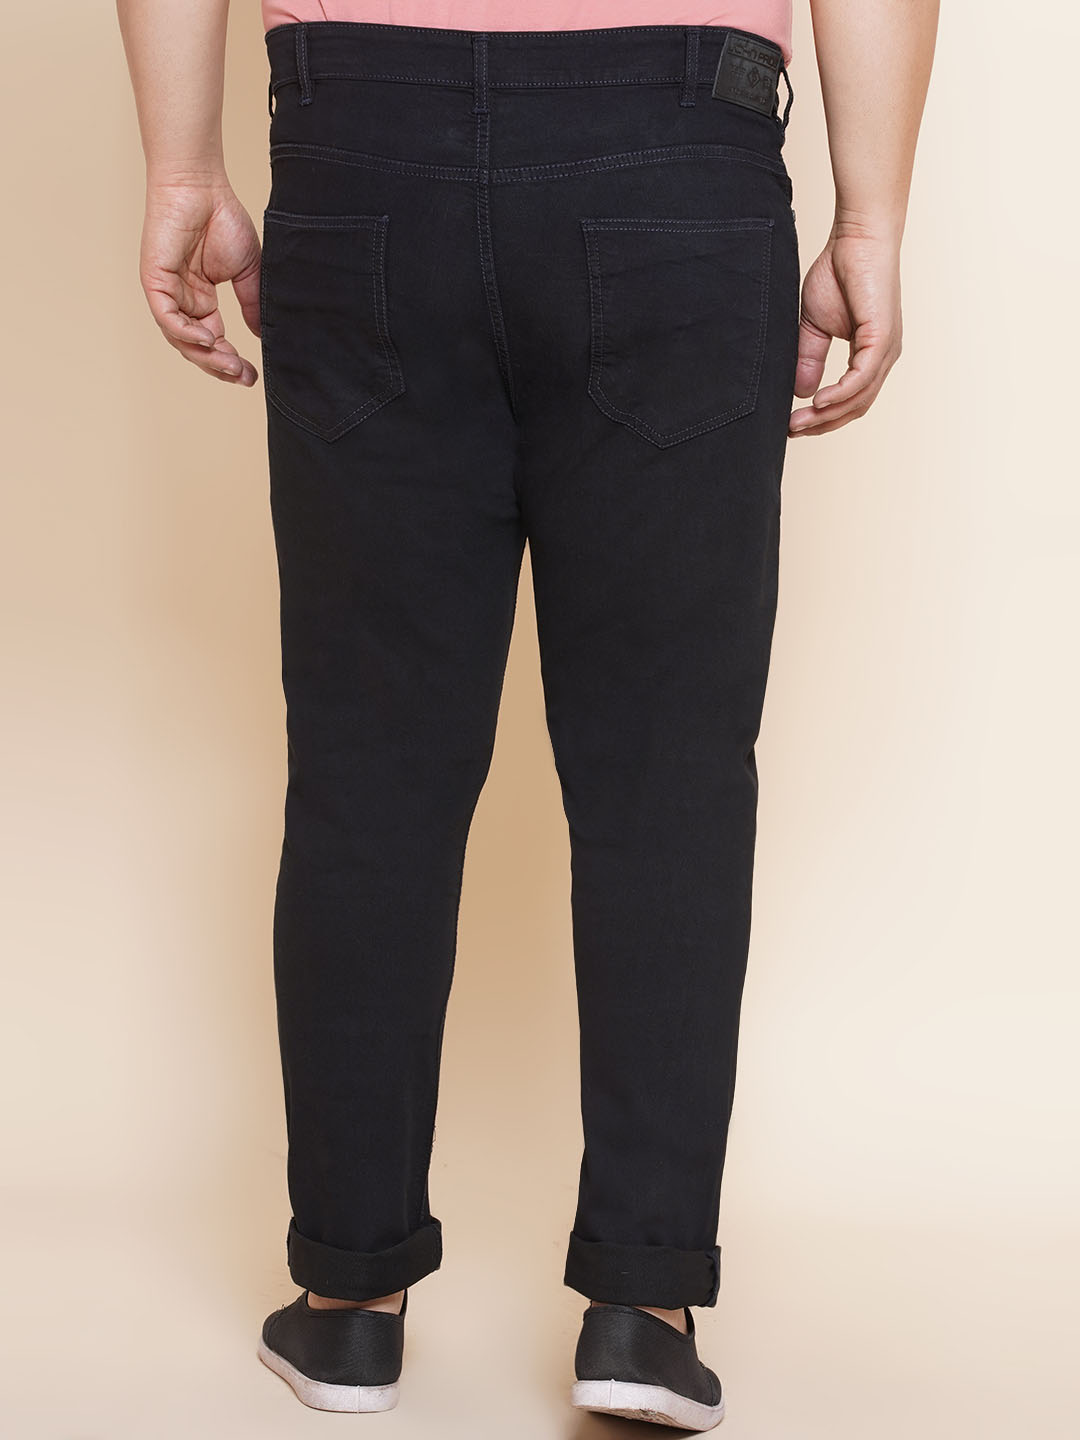 bottomwear/jeans/EJPJ25107/ejpj25107-5.jpg